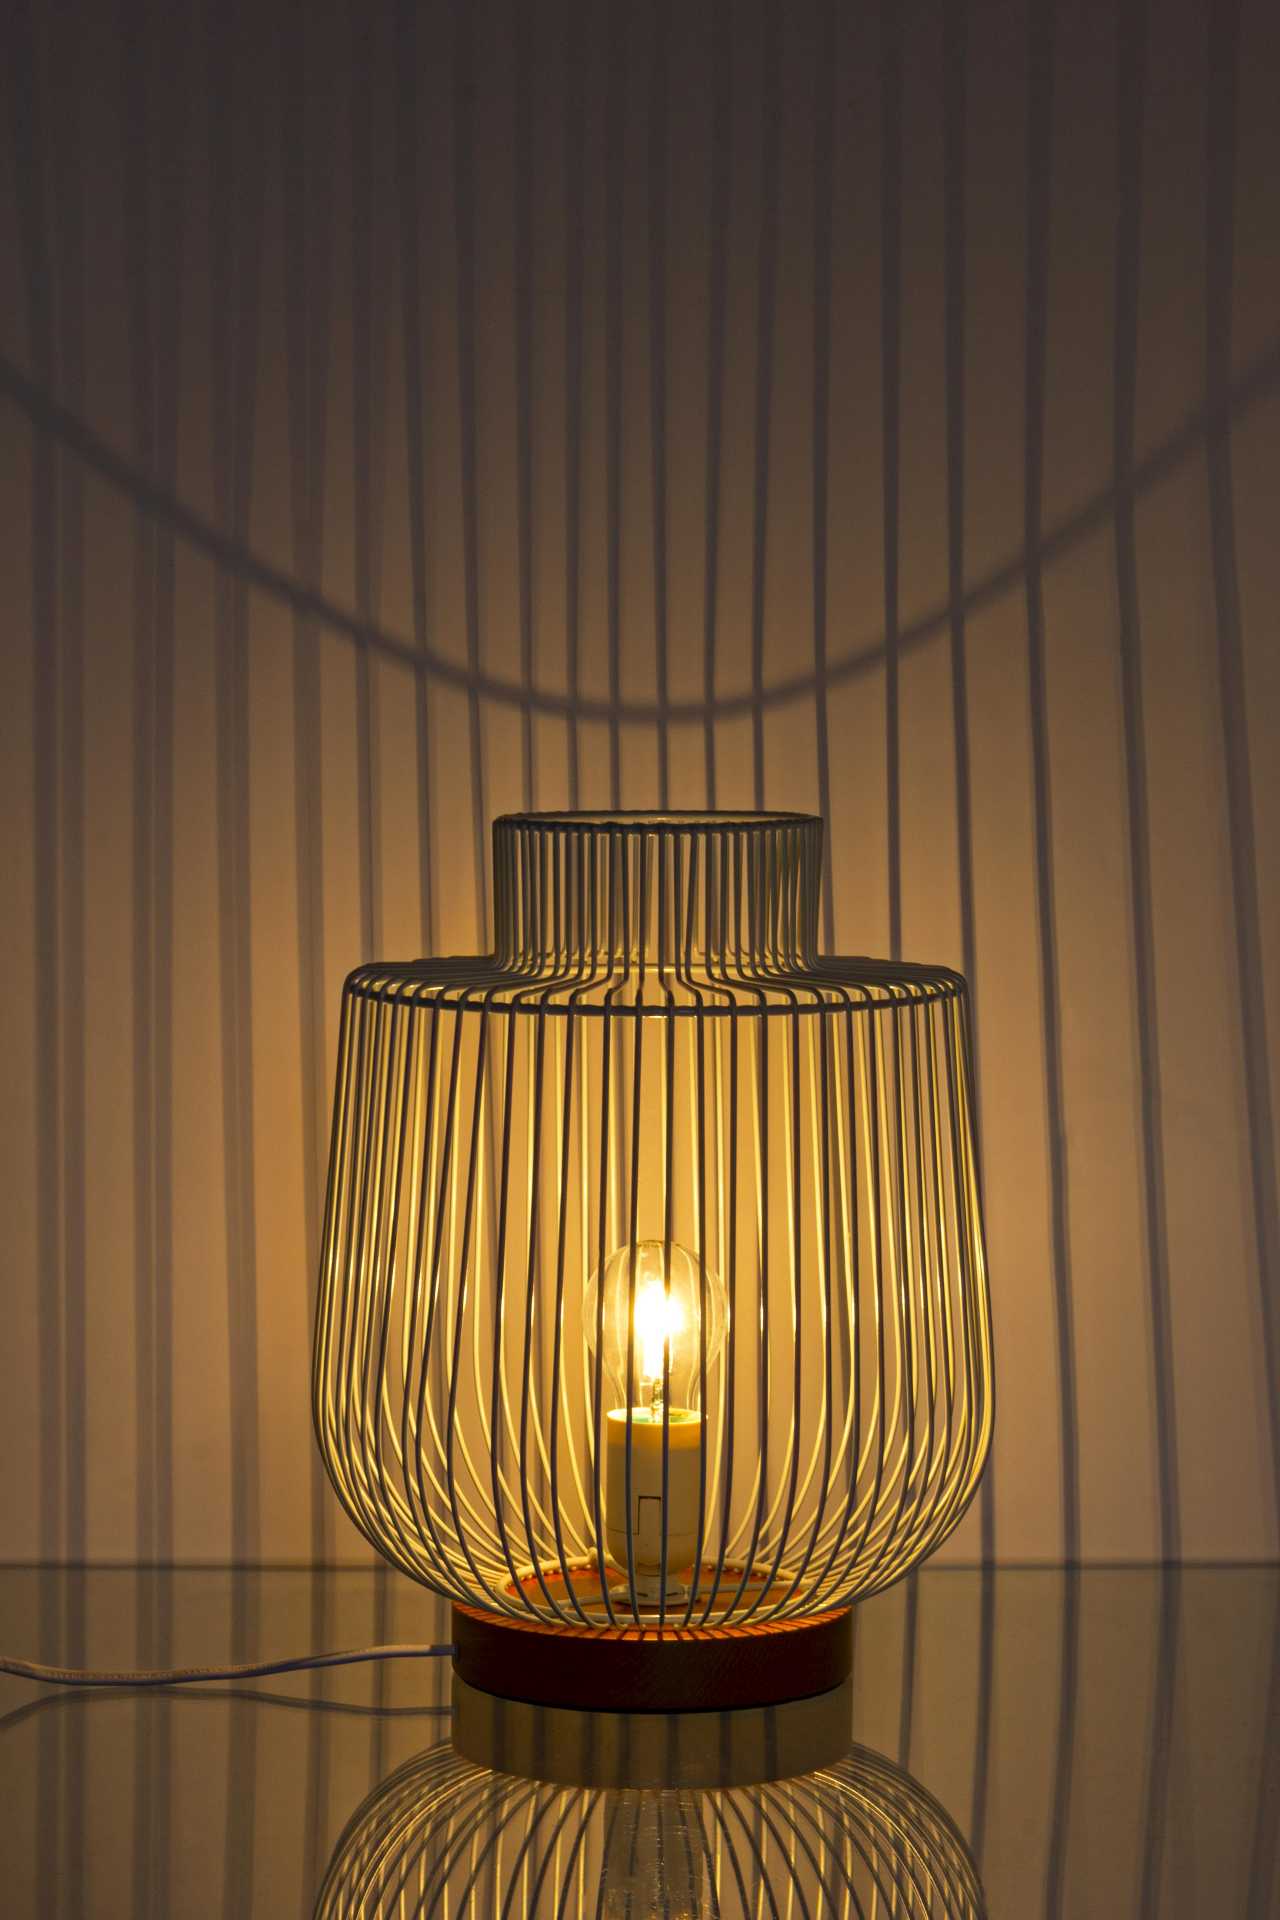 Die Tischleuchte Luxor überzeugt mit ihrem modernen Design. Gefertigt wurde sie aus Buchenholz, welches einen natürlichen Farbton besitzt. Der Lampenschirm ist aus Glas. Die Lampe besitzt eine Höhe von 32 cm.